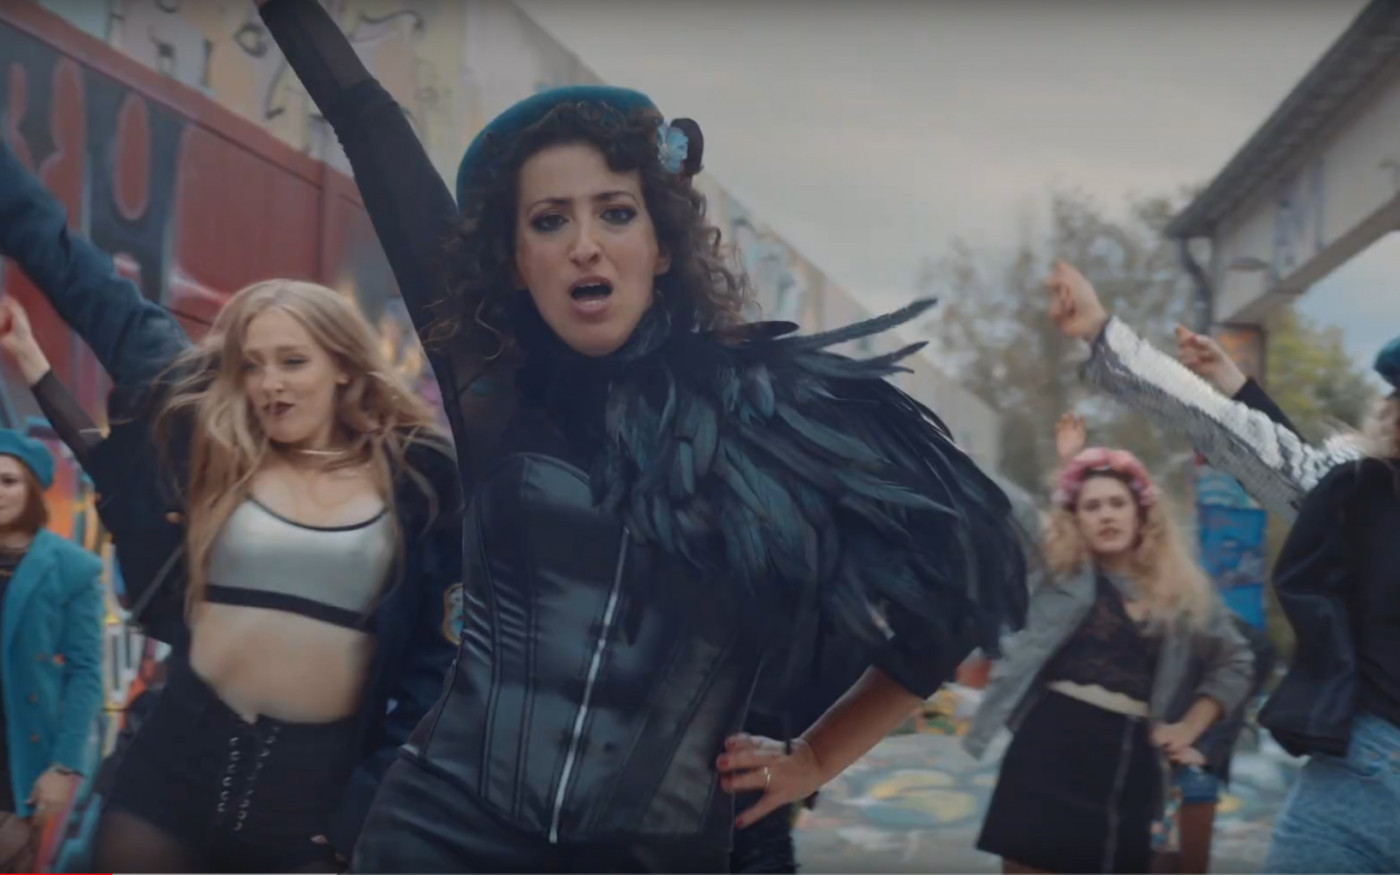 Superheldinnen vs. Penisköpfe - Gifhorner Band Kleopetrol kämpft mit neuer Single für Geschlechtergerechtigkeit